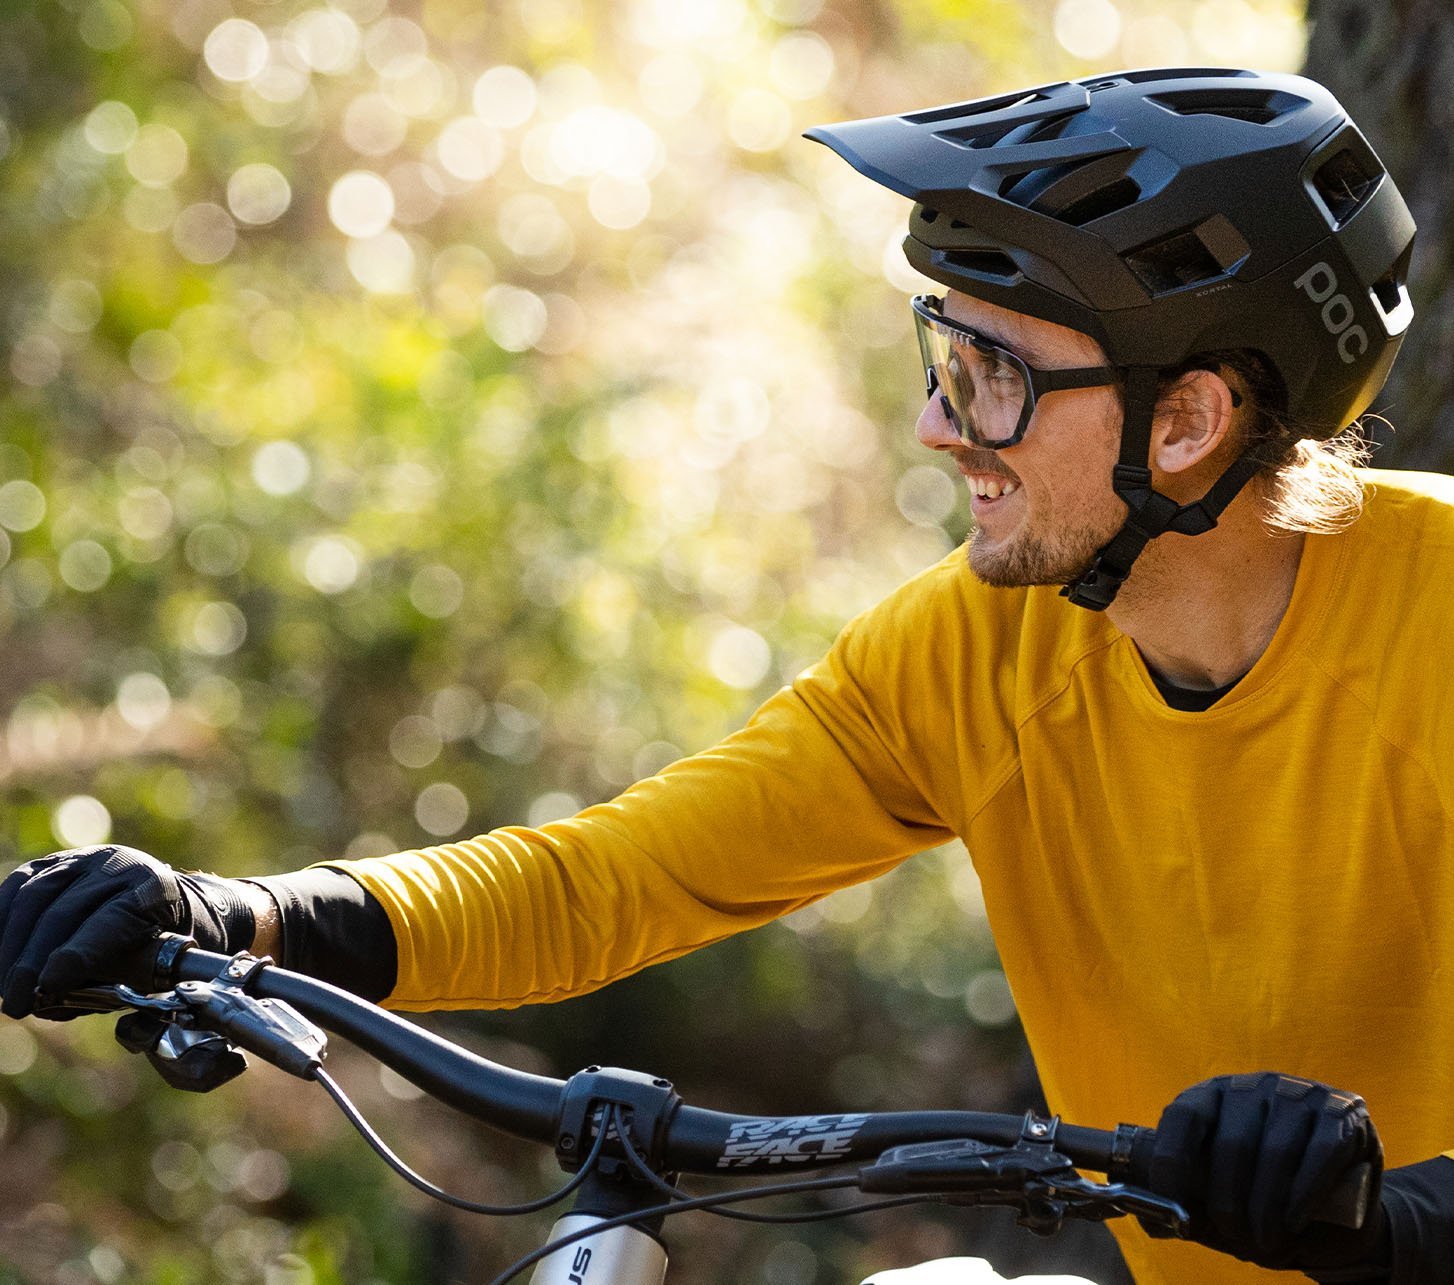 POC Protektoren, Helme & Fahrradbekleidung für MTB und Rennrad